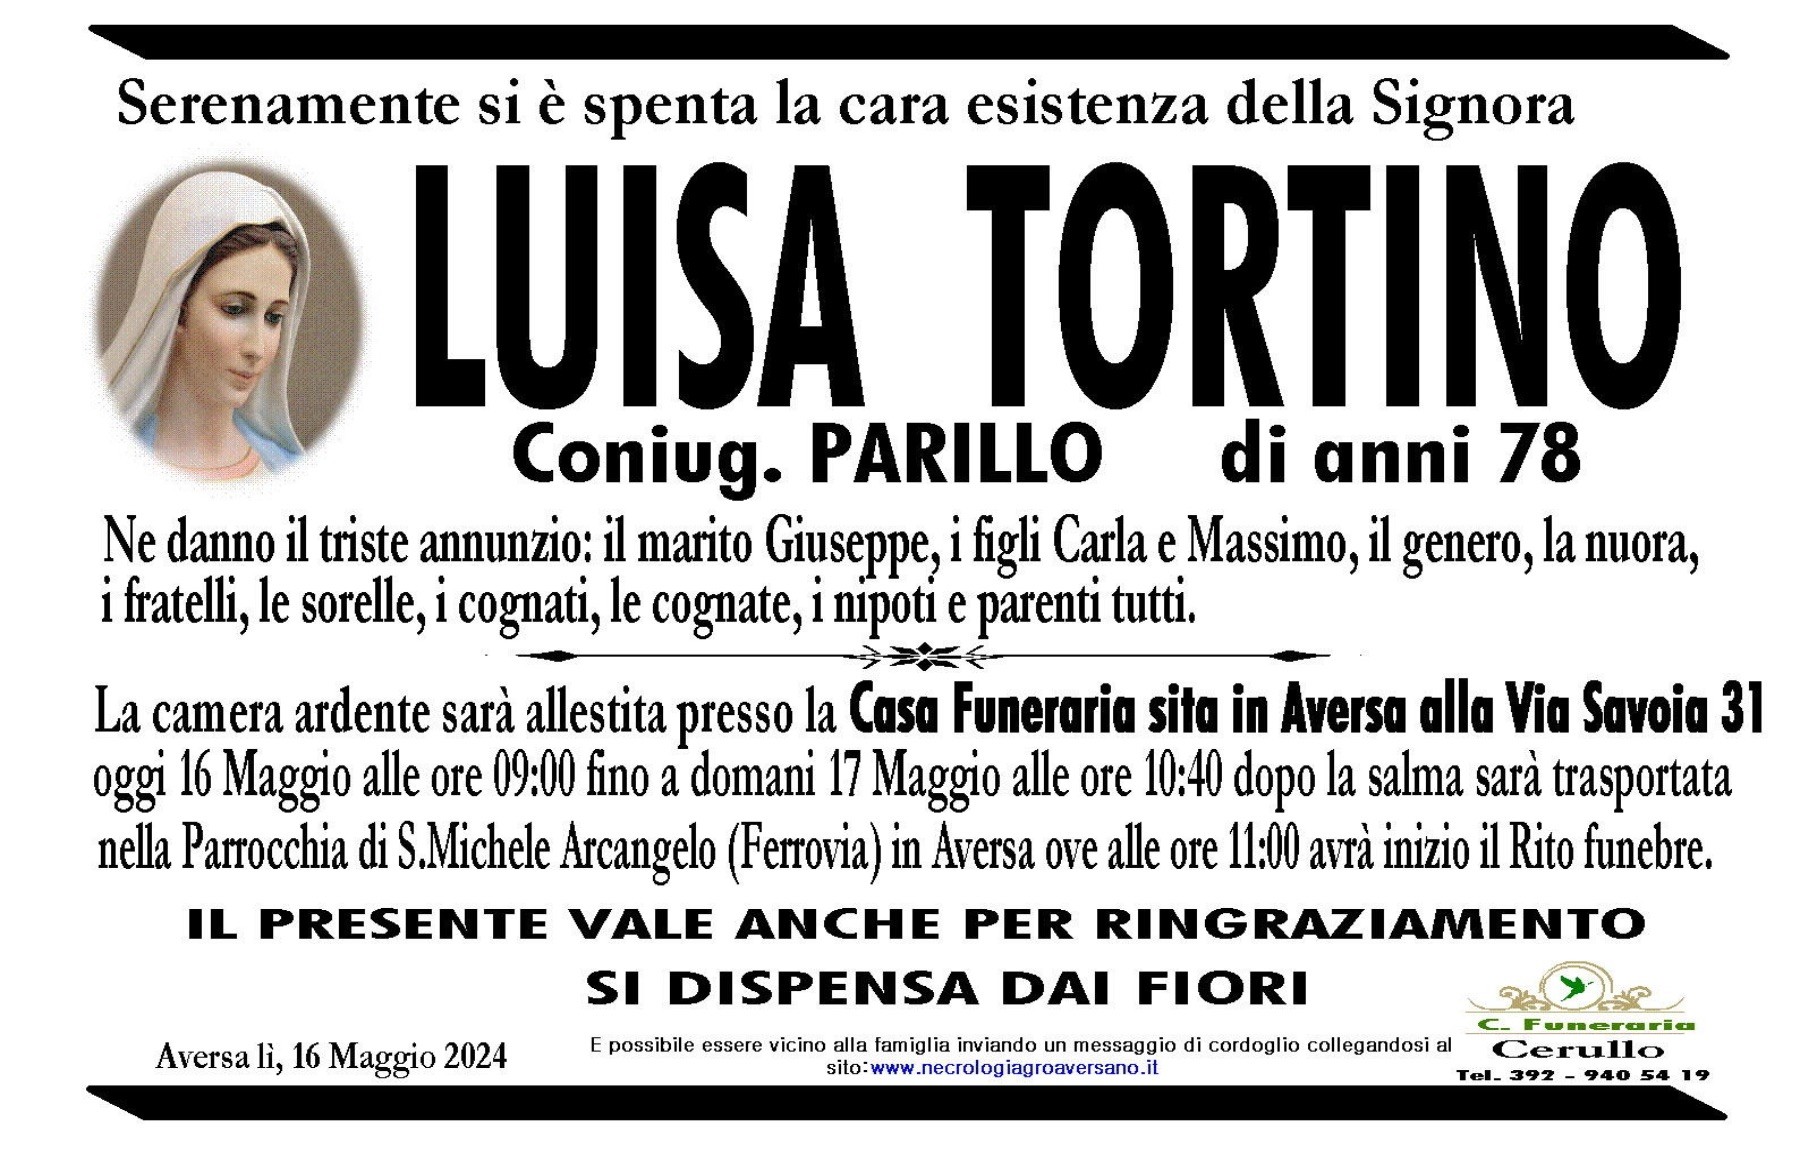 Luisa Tortino